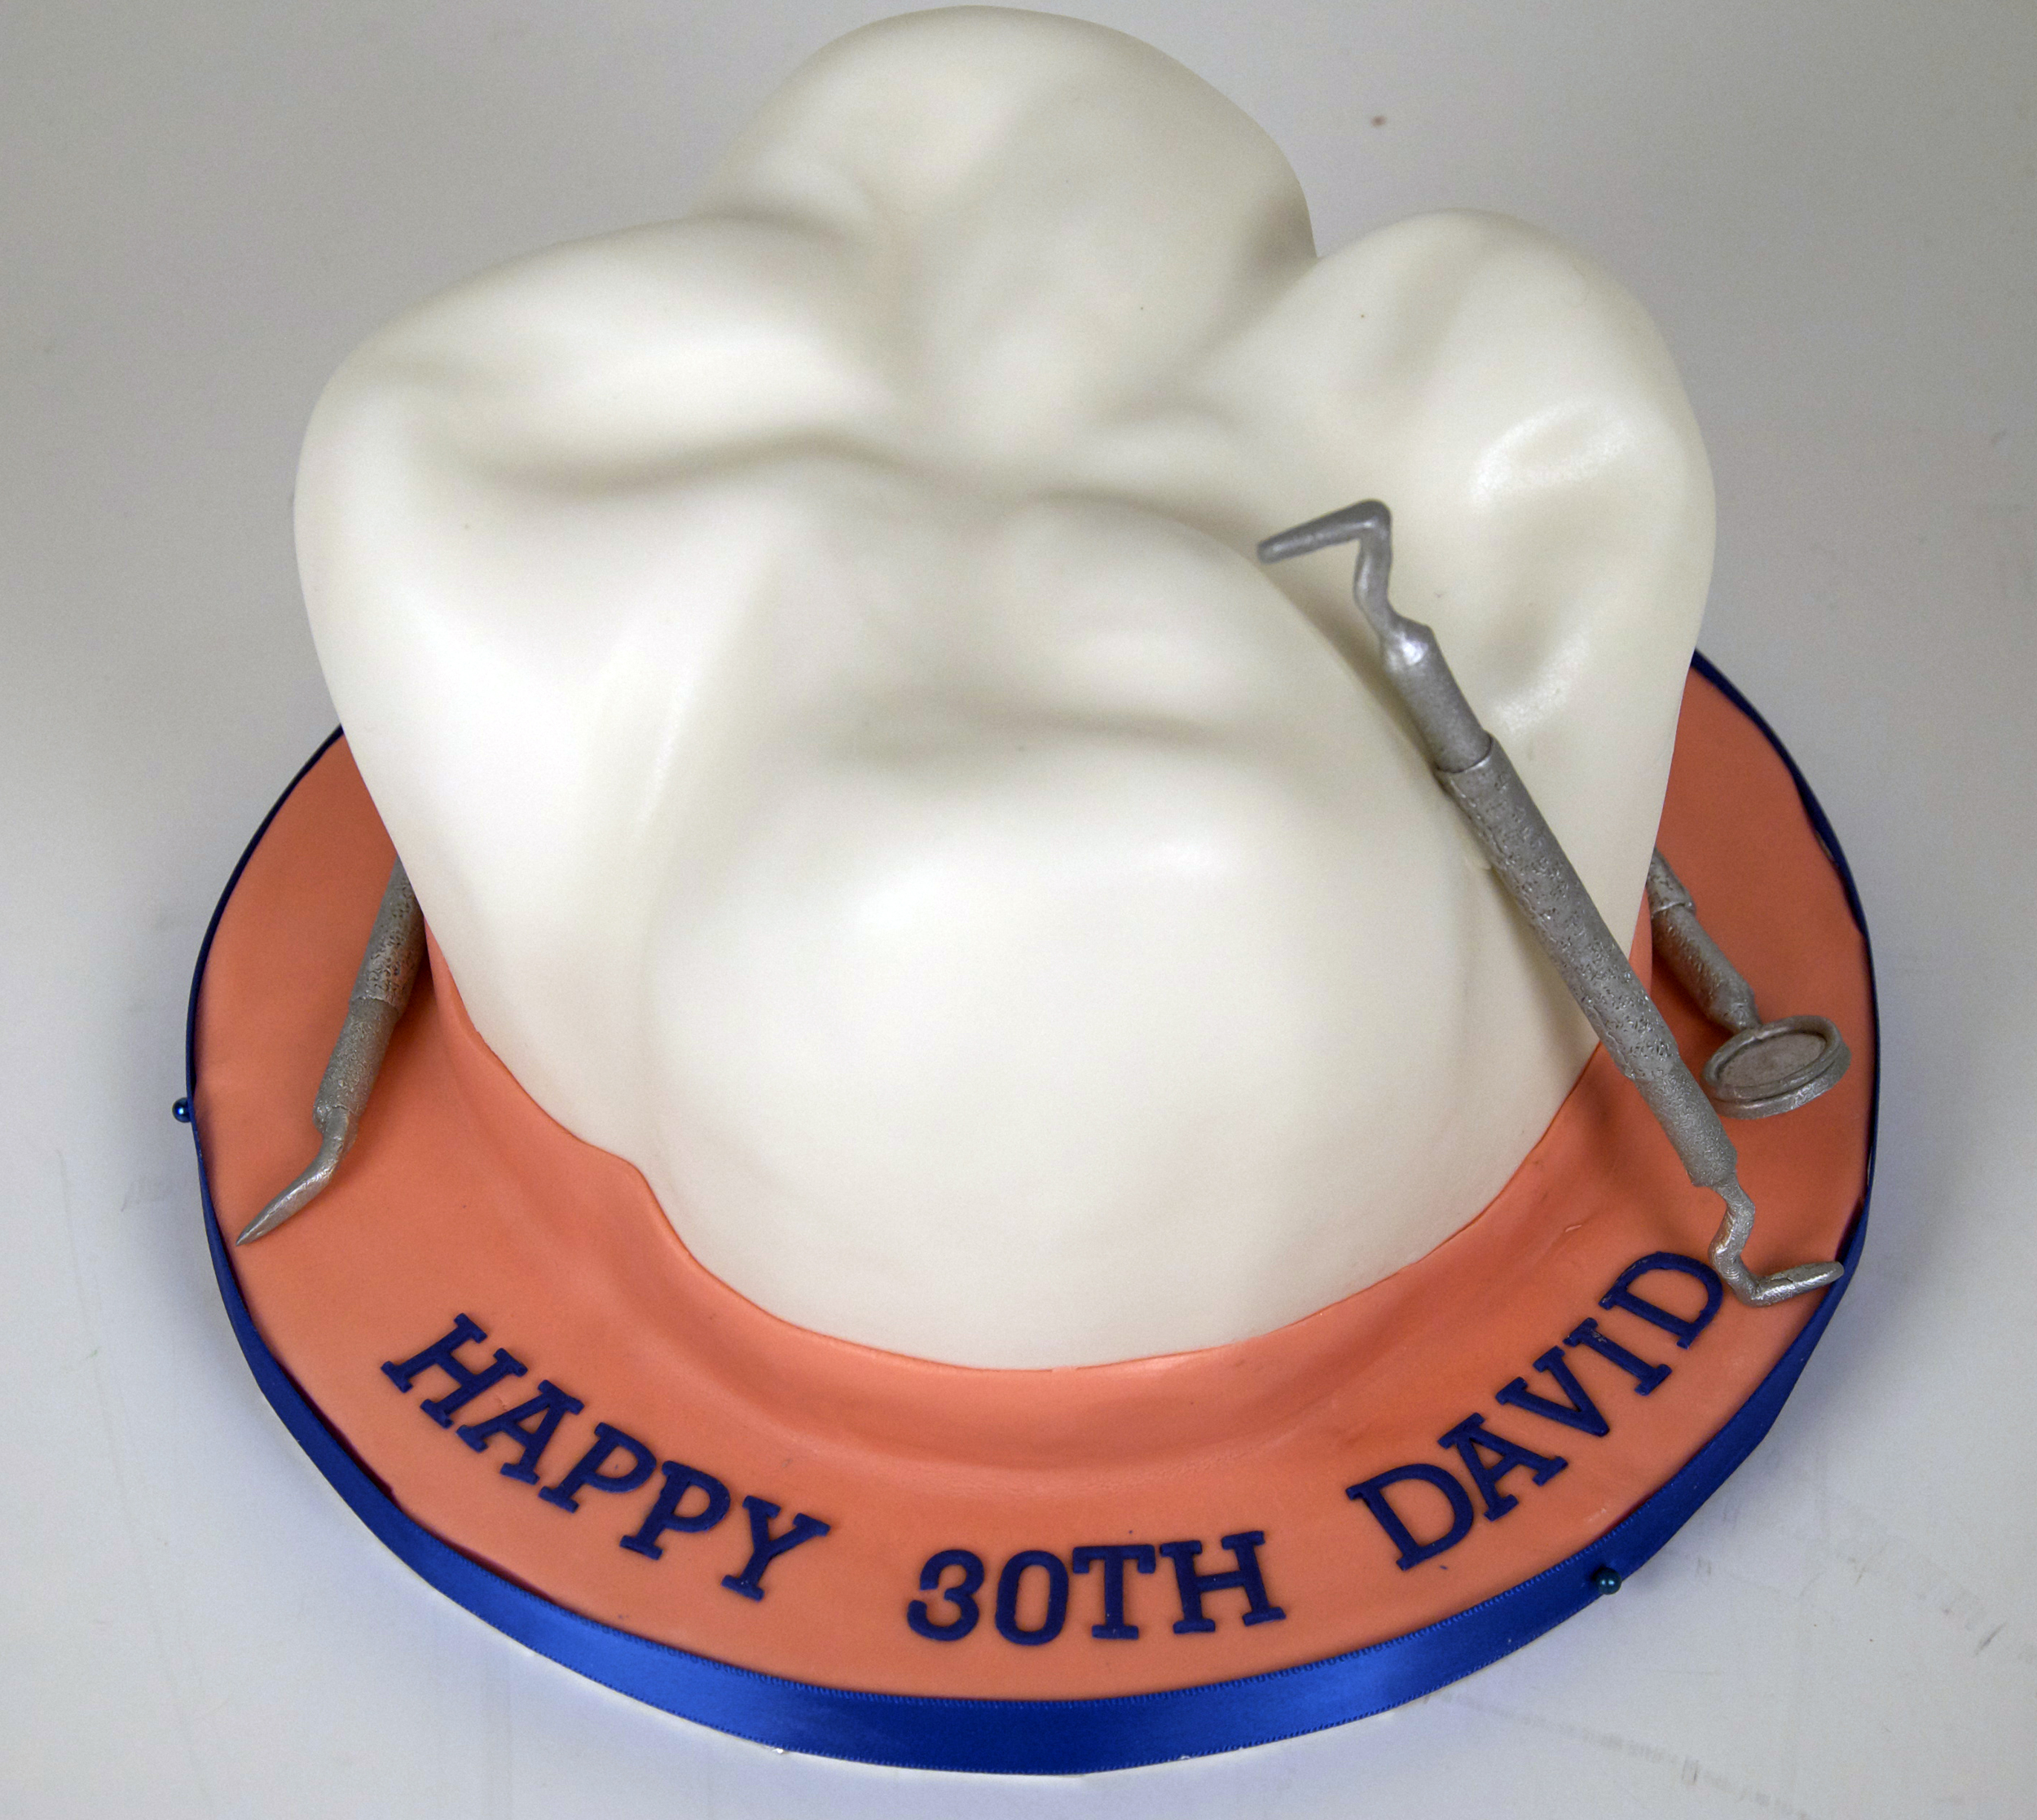 Поздравления С Днем Рождения Стоматологу Картинки